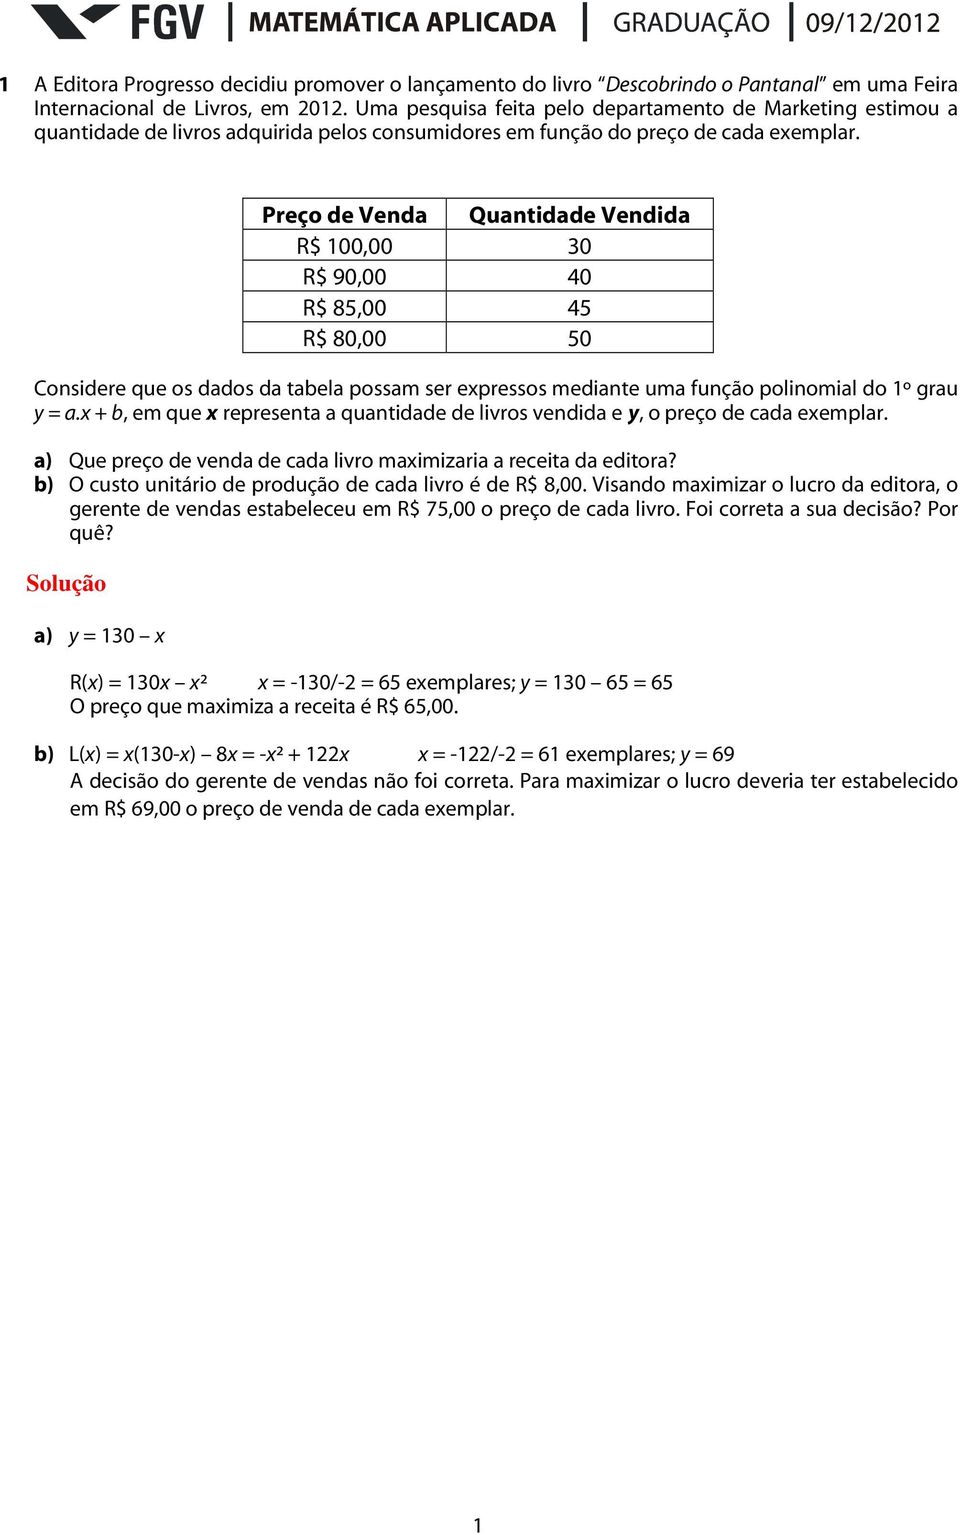 Preço de Venda Quantidade Vendida R$ 100,00 30 R$ 90,00 40 R$ 85,00 45 R$ 80,00 50 Considere que os dados da tabela possam ser expressos mediante uma função polinomial do 1º grau y = a.